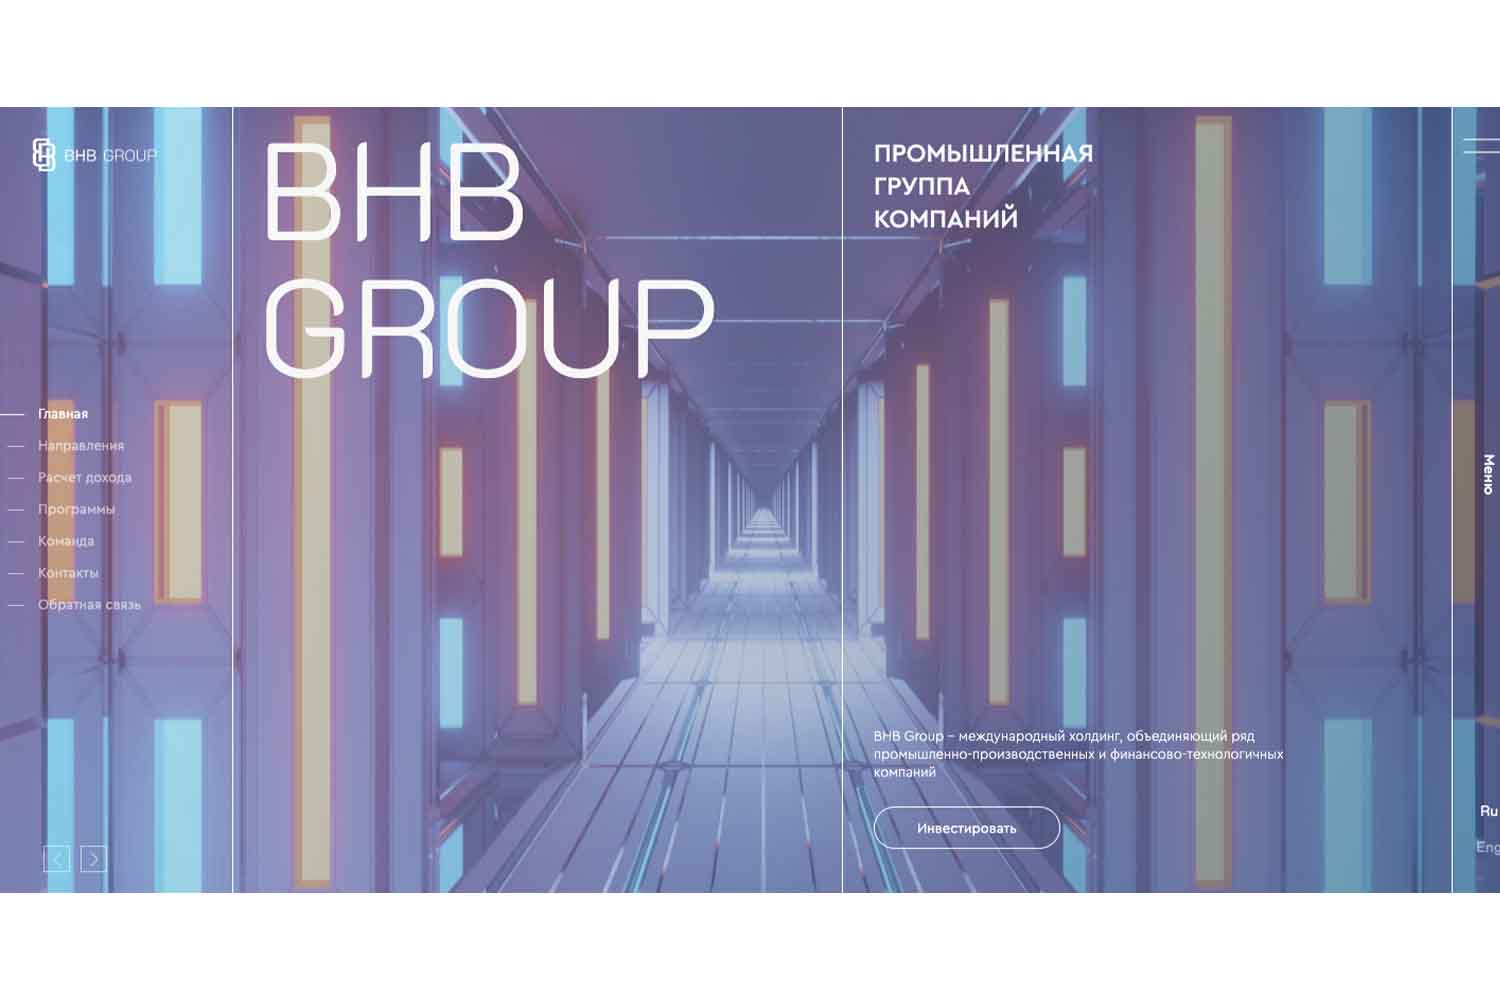 Отзывы о BHB Group — заработок или риск попасть на обман?